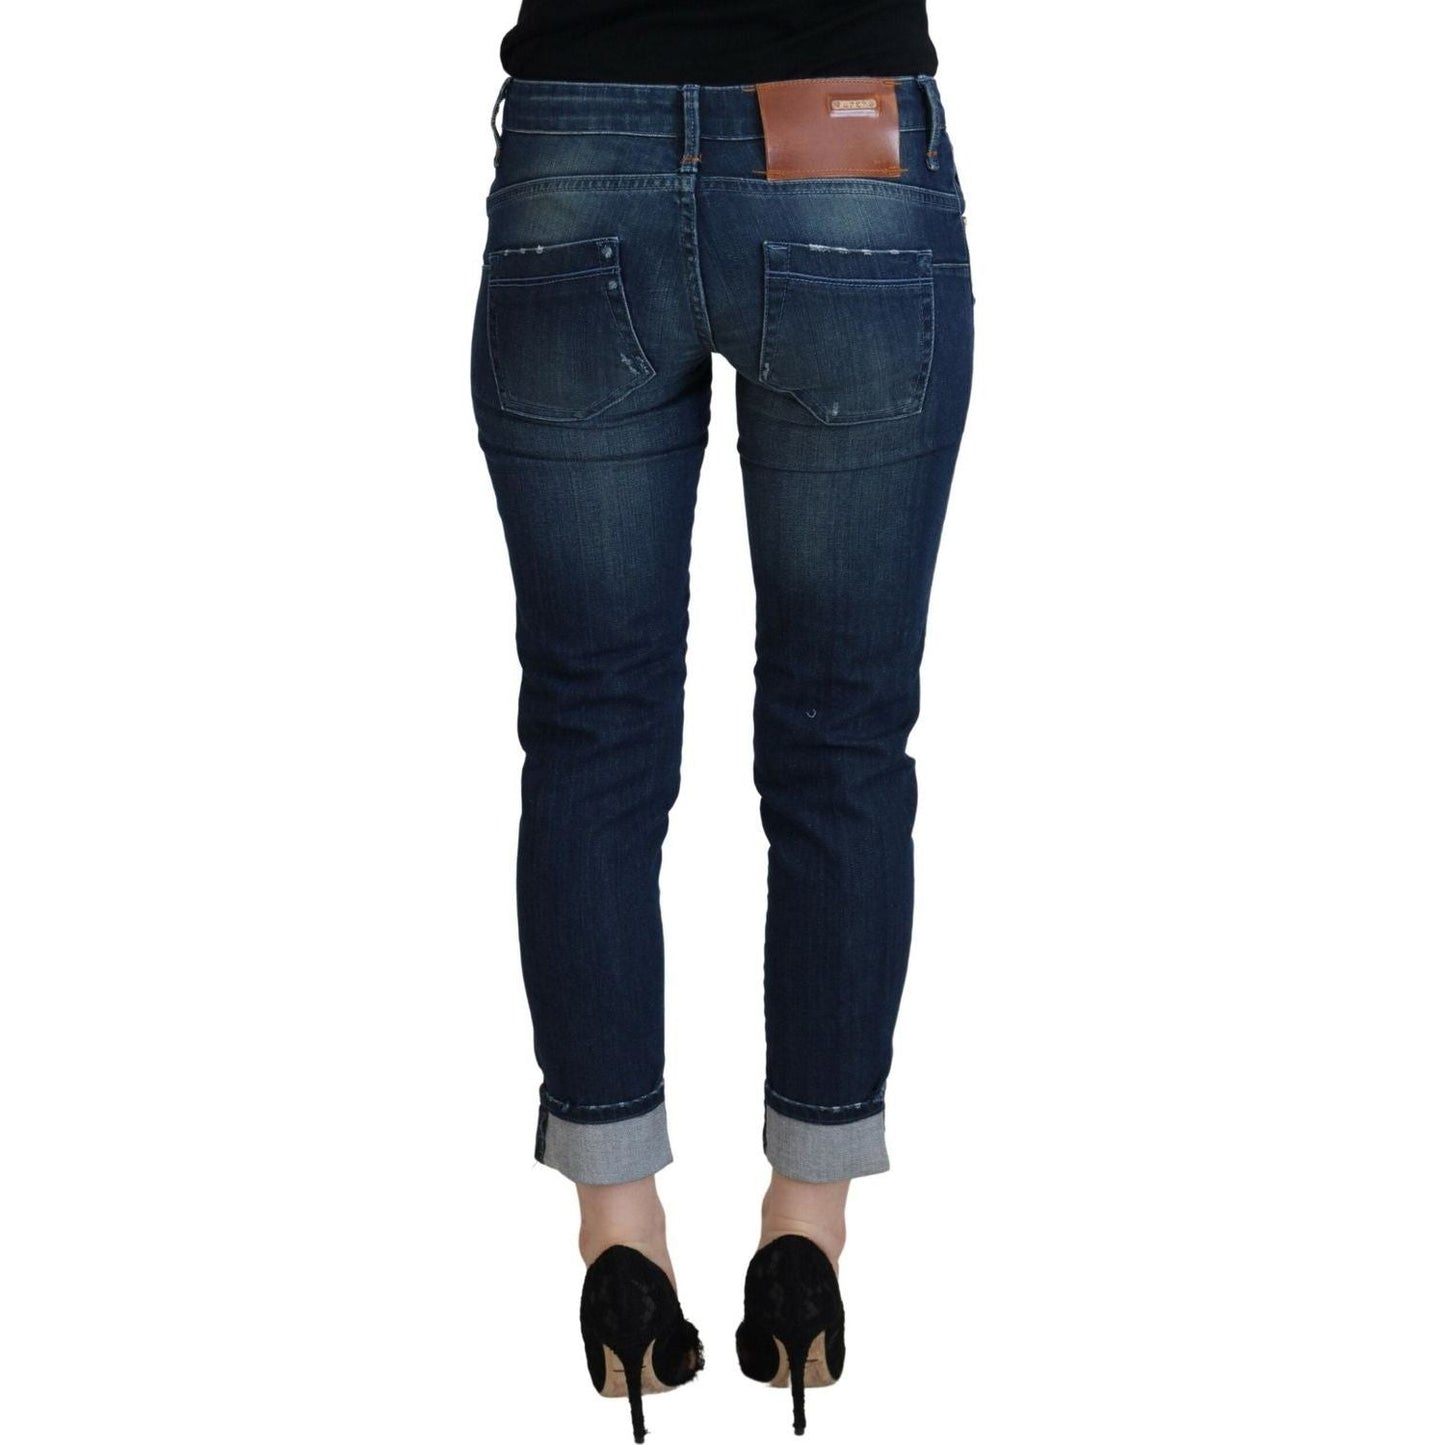 Acht Chic Low Waist Slim Fit Jeans blue-cotton-slim-fit-women-casual-denim-jeans